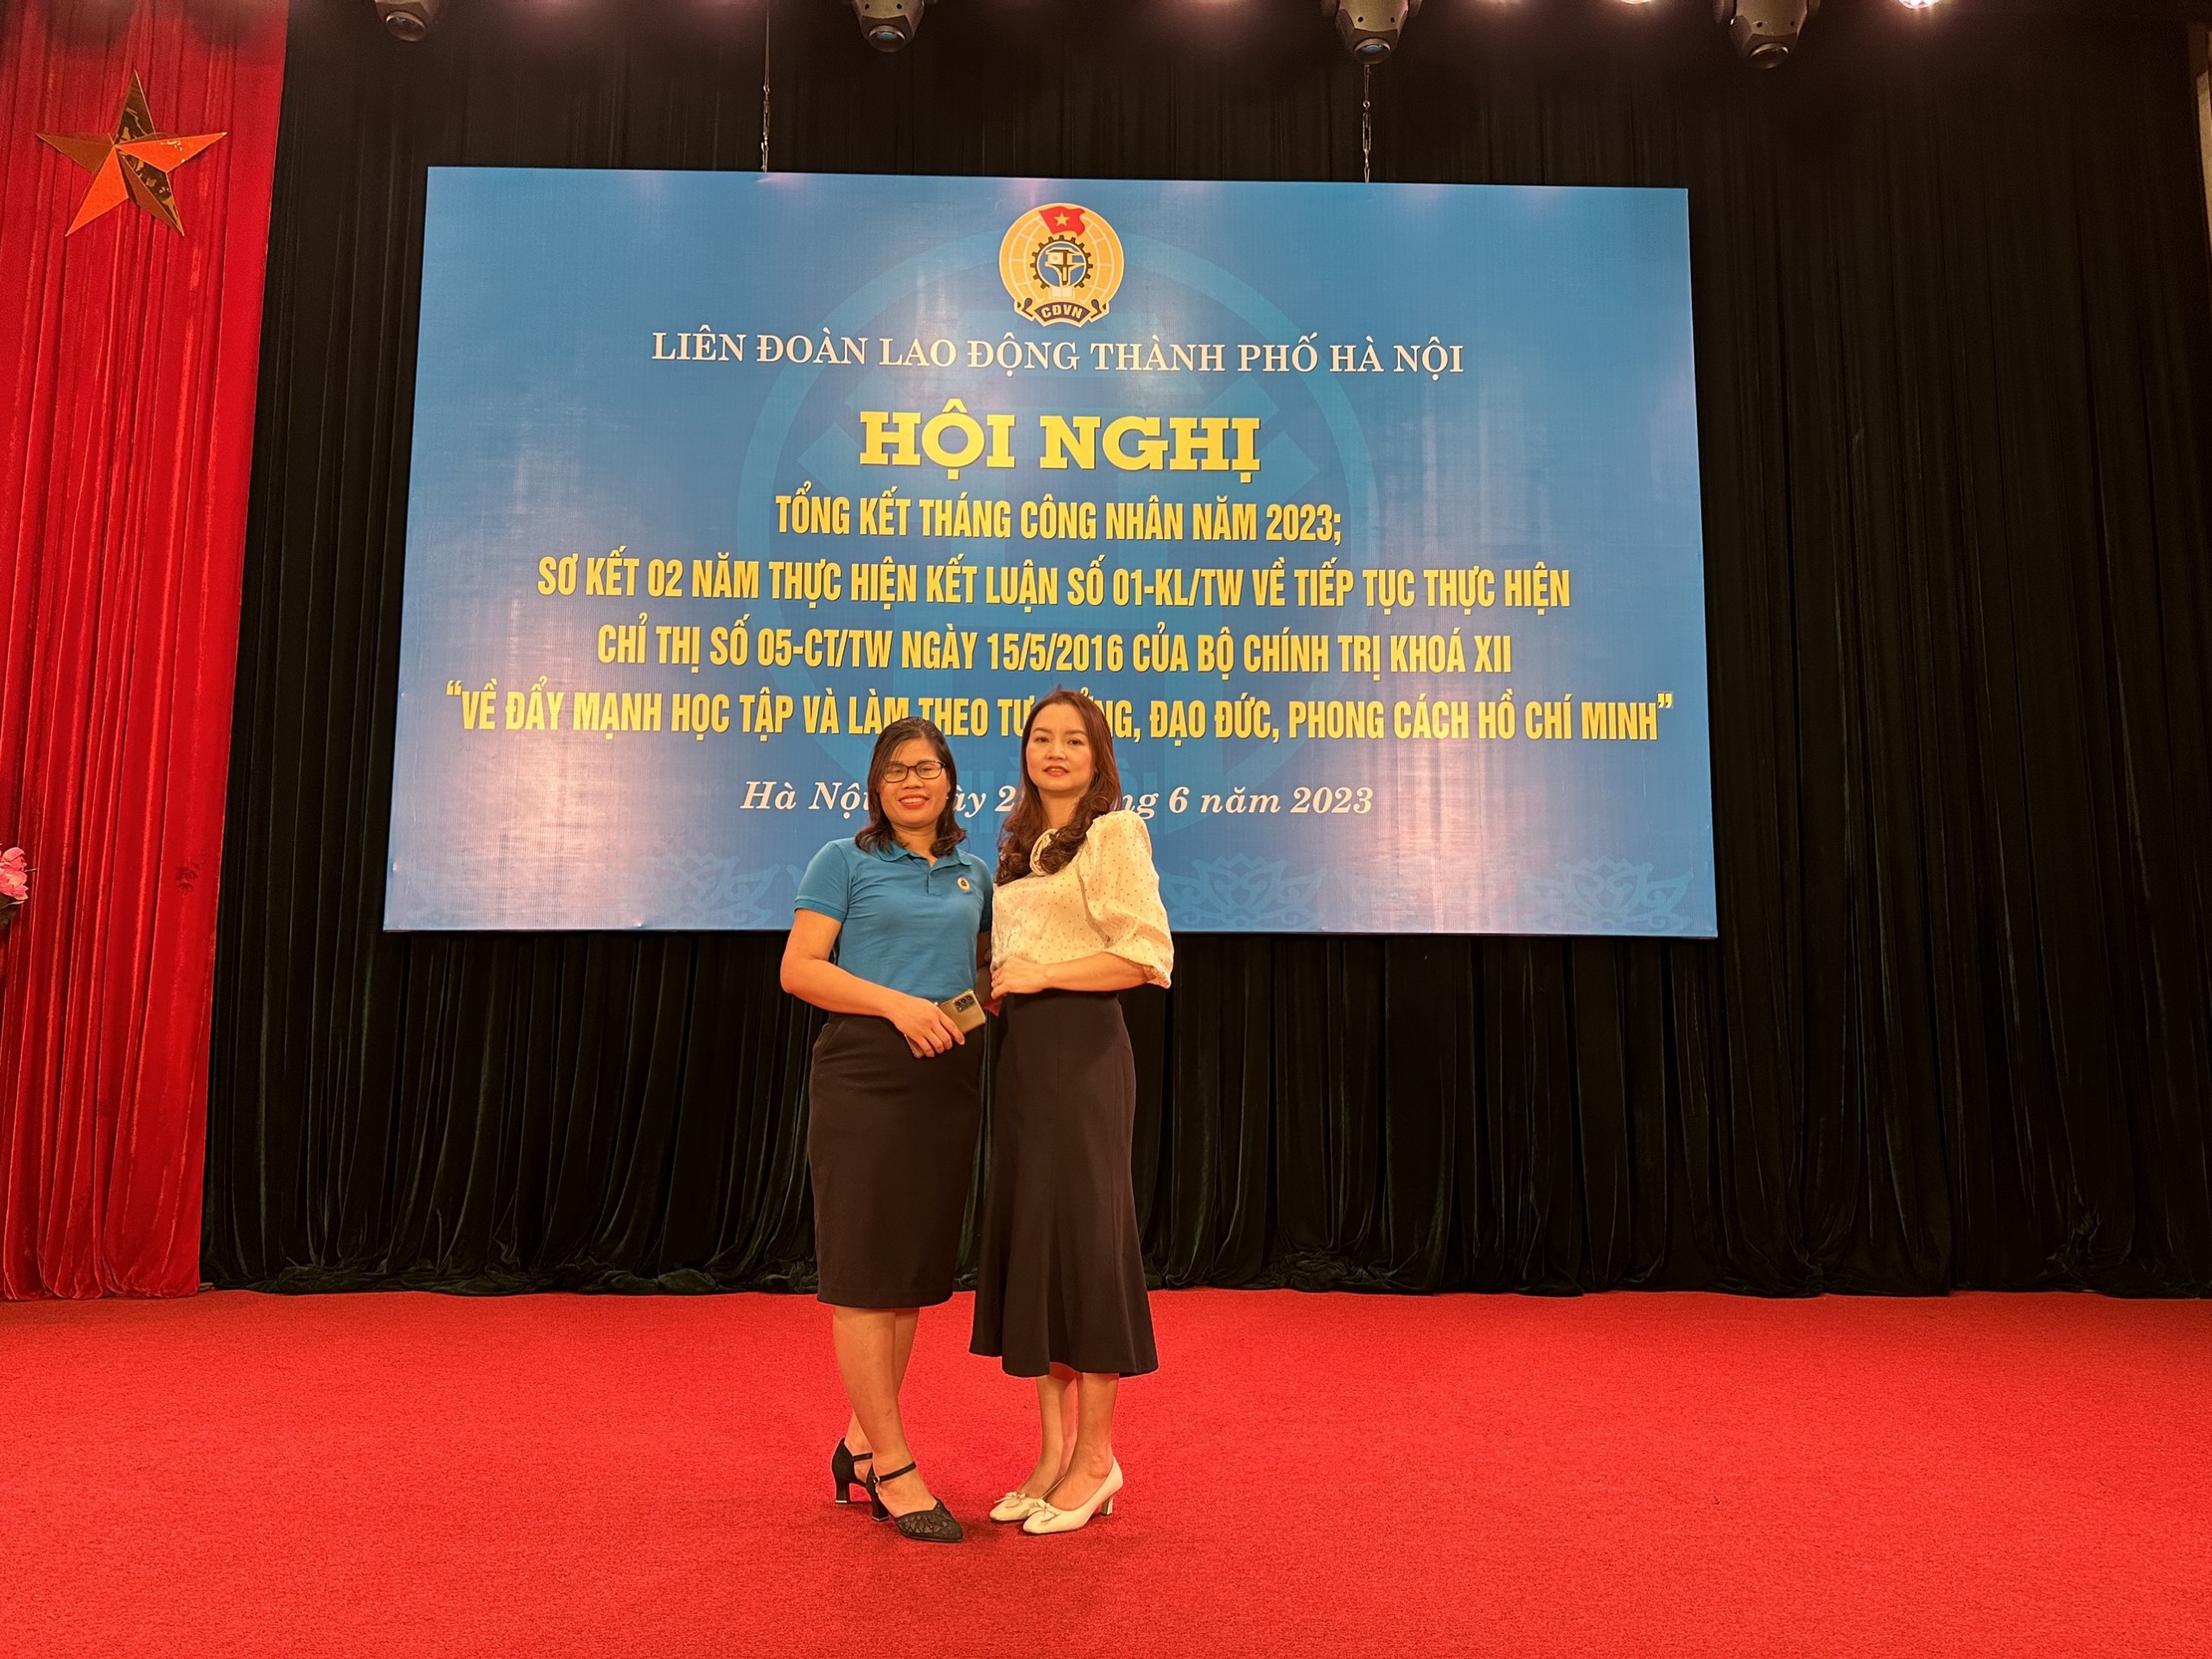 Đồng chí Nguyễn Thị Hiền Lương - Hiệu trưởng trường Tiểu học Vân Canh đón nhận Bằng khen của LĐLĐ thành phố